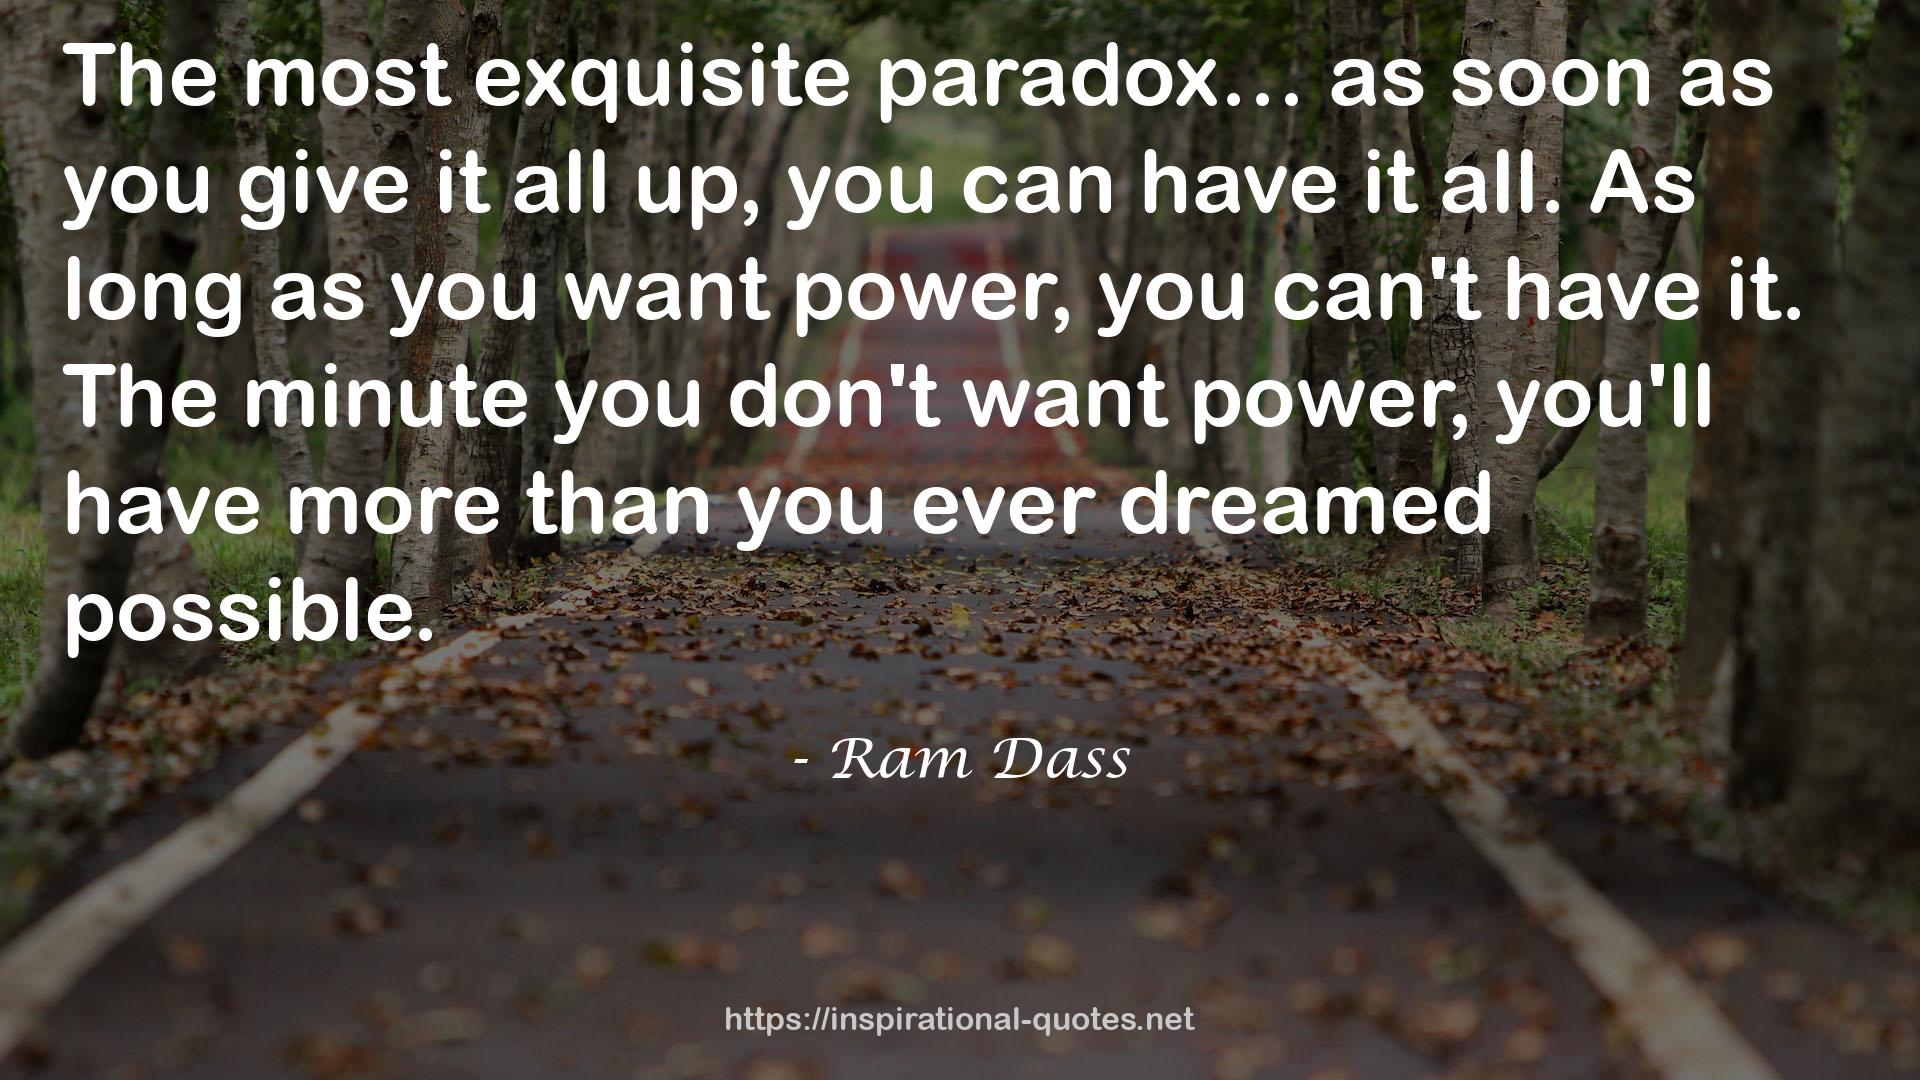 Ram Dass QUOTES